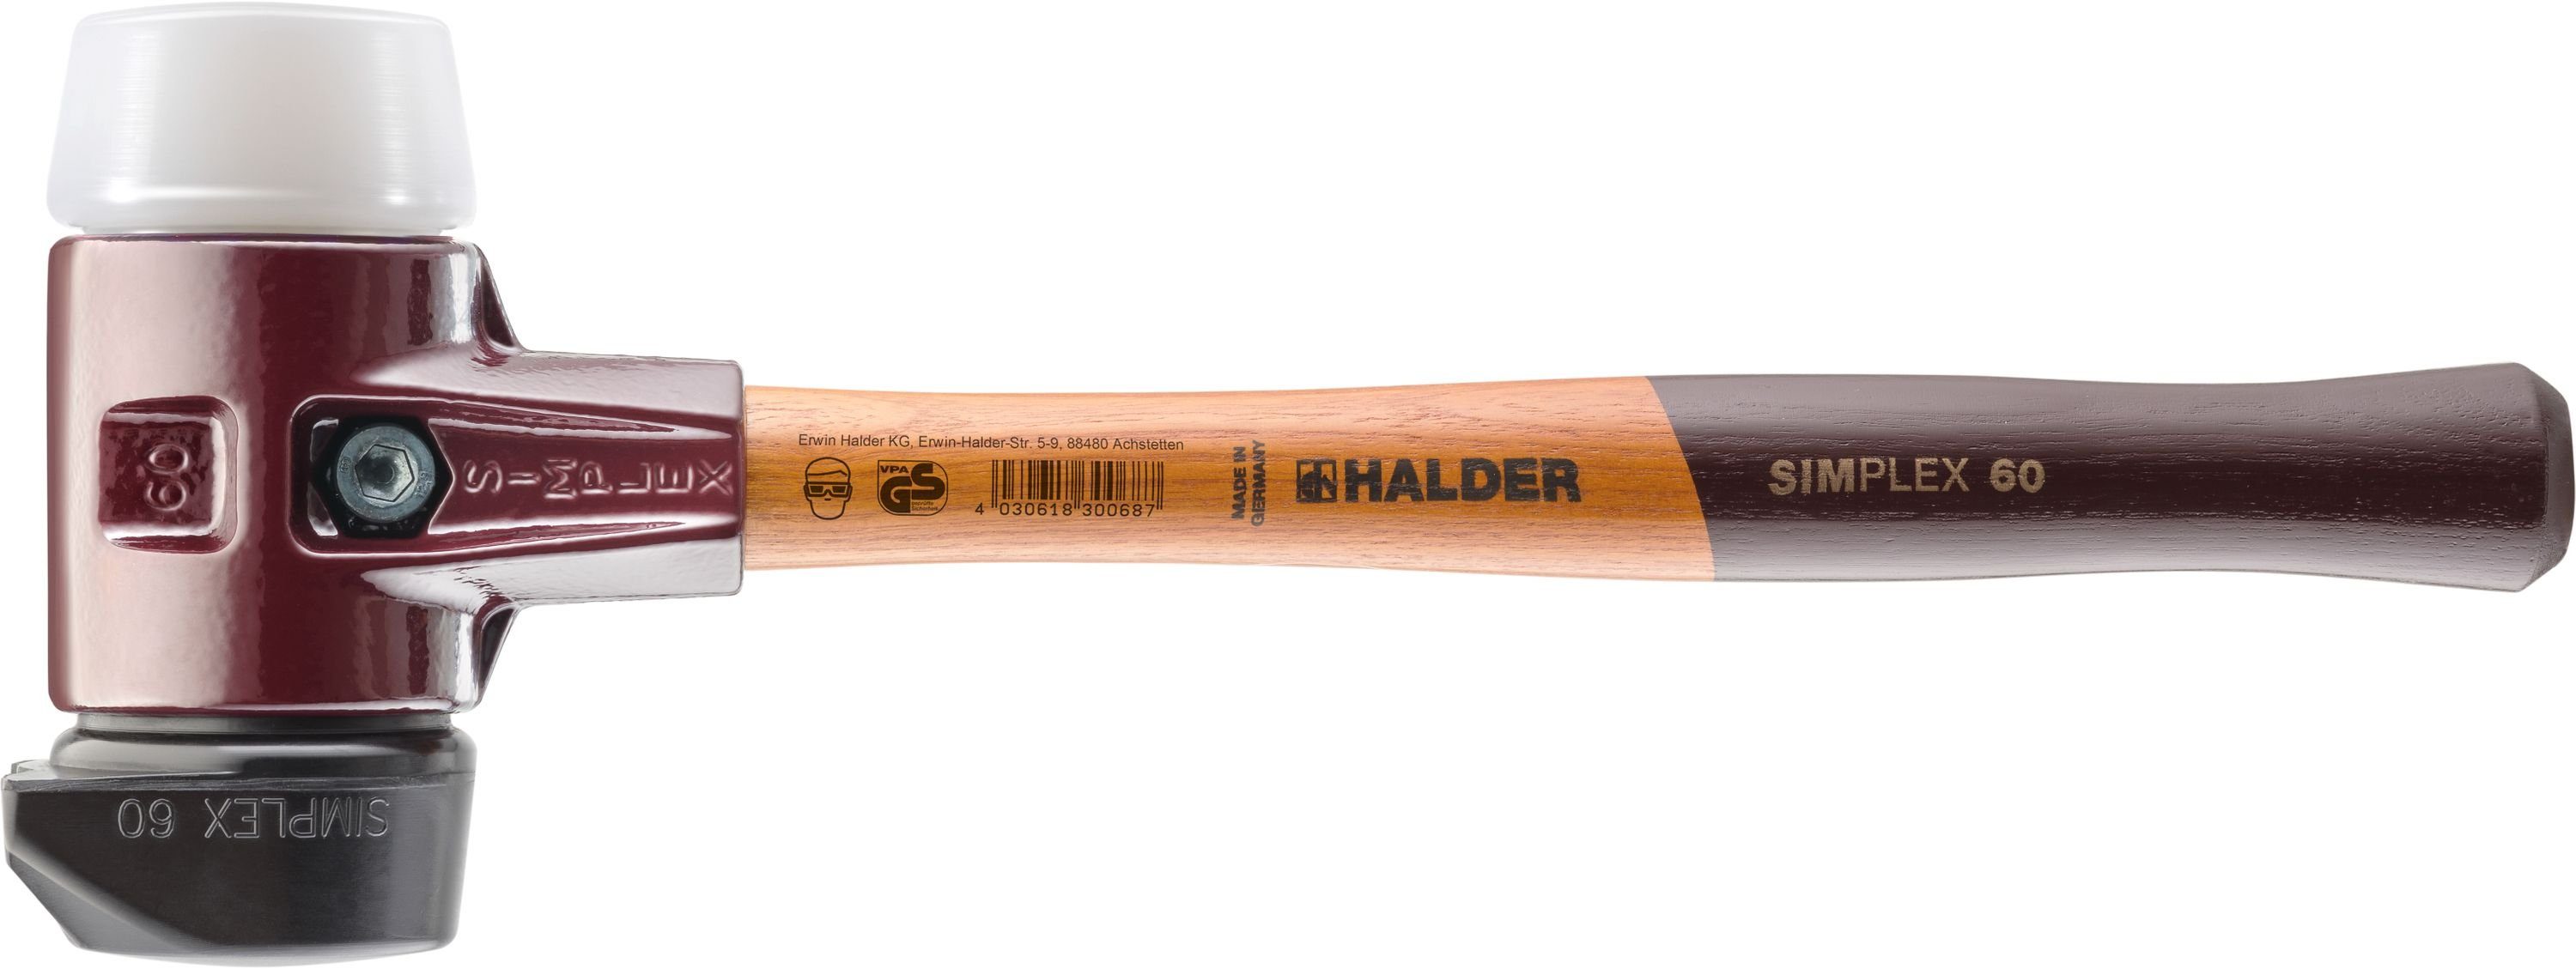 Halder KG Hammer Halder Simplex-Schonhammer 60mm mit Standfuß und 2 Schlageinsätzen Gummi mittelhart & Superplastik mittelhart - 3027.260